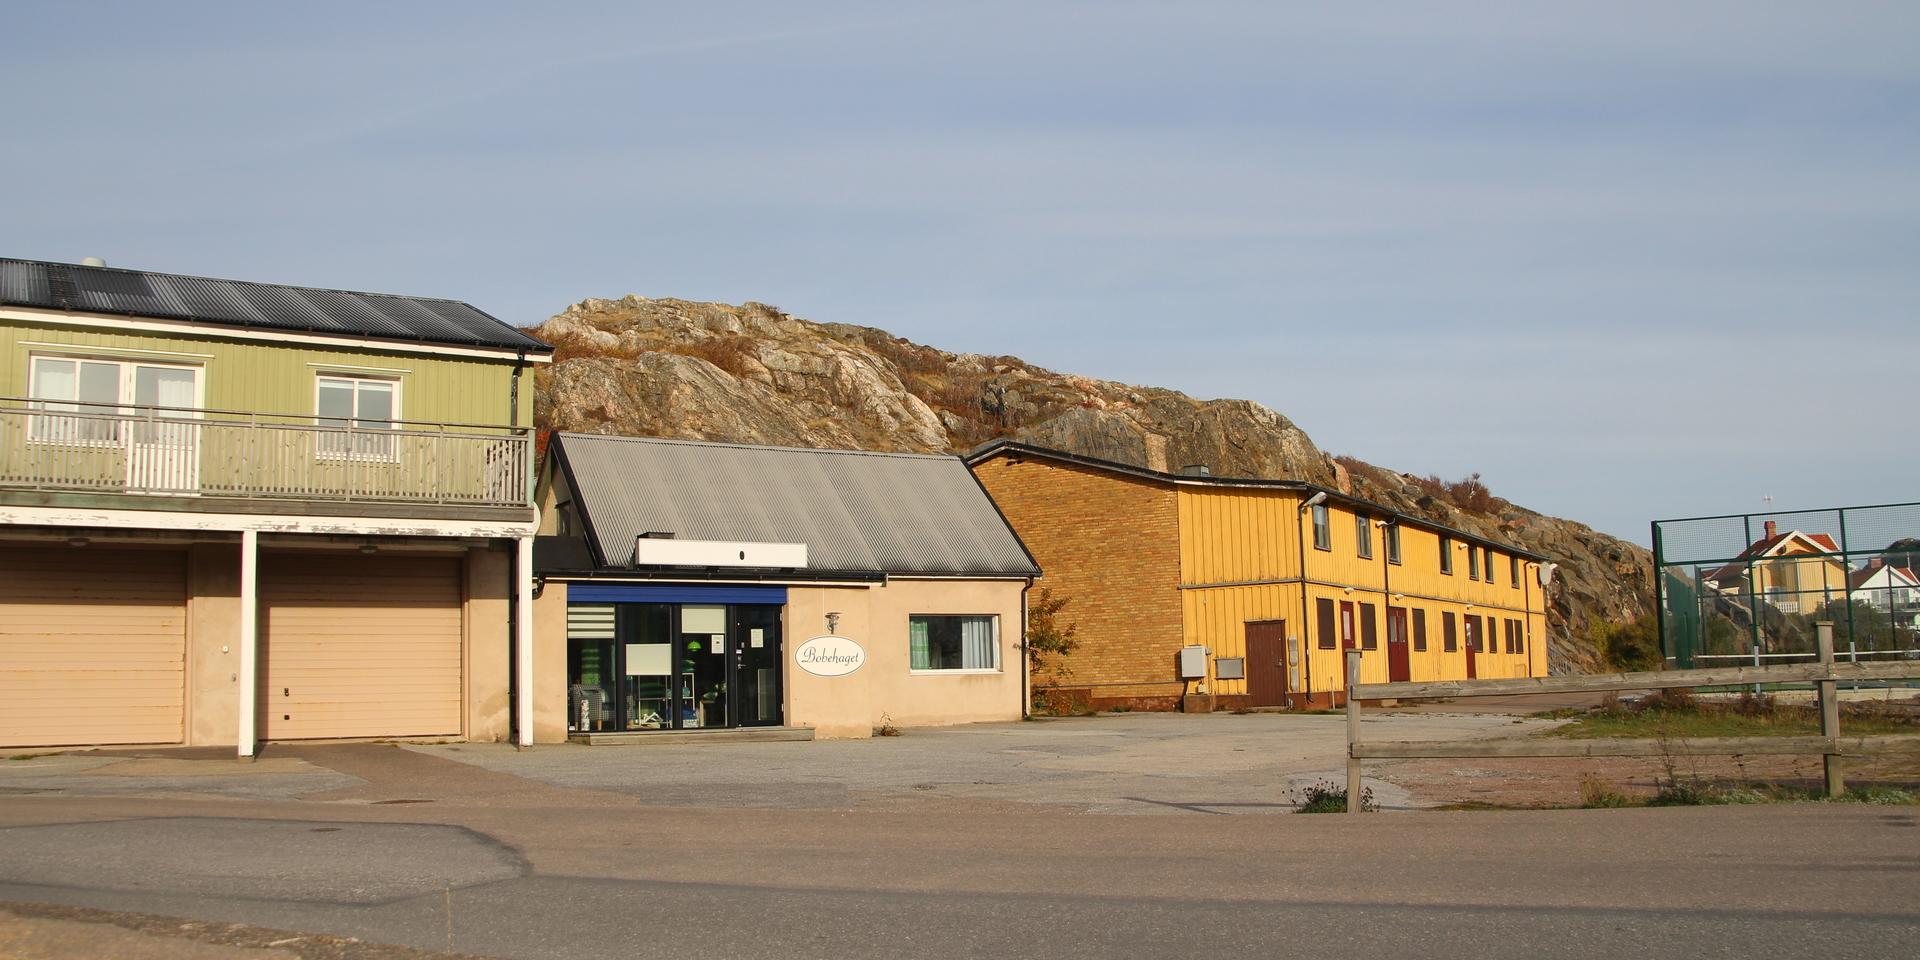 Flerbostadshus planeras utefter berget på Sagatomten i Skärhamn.